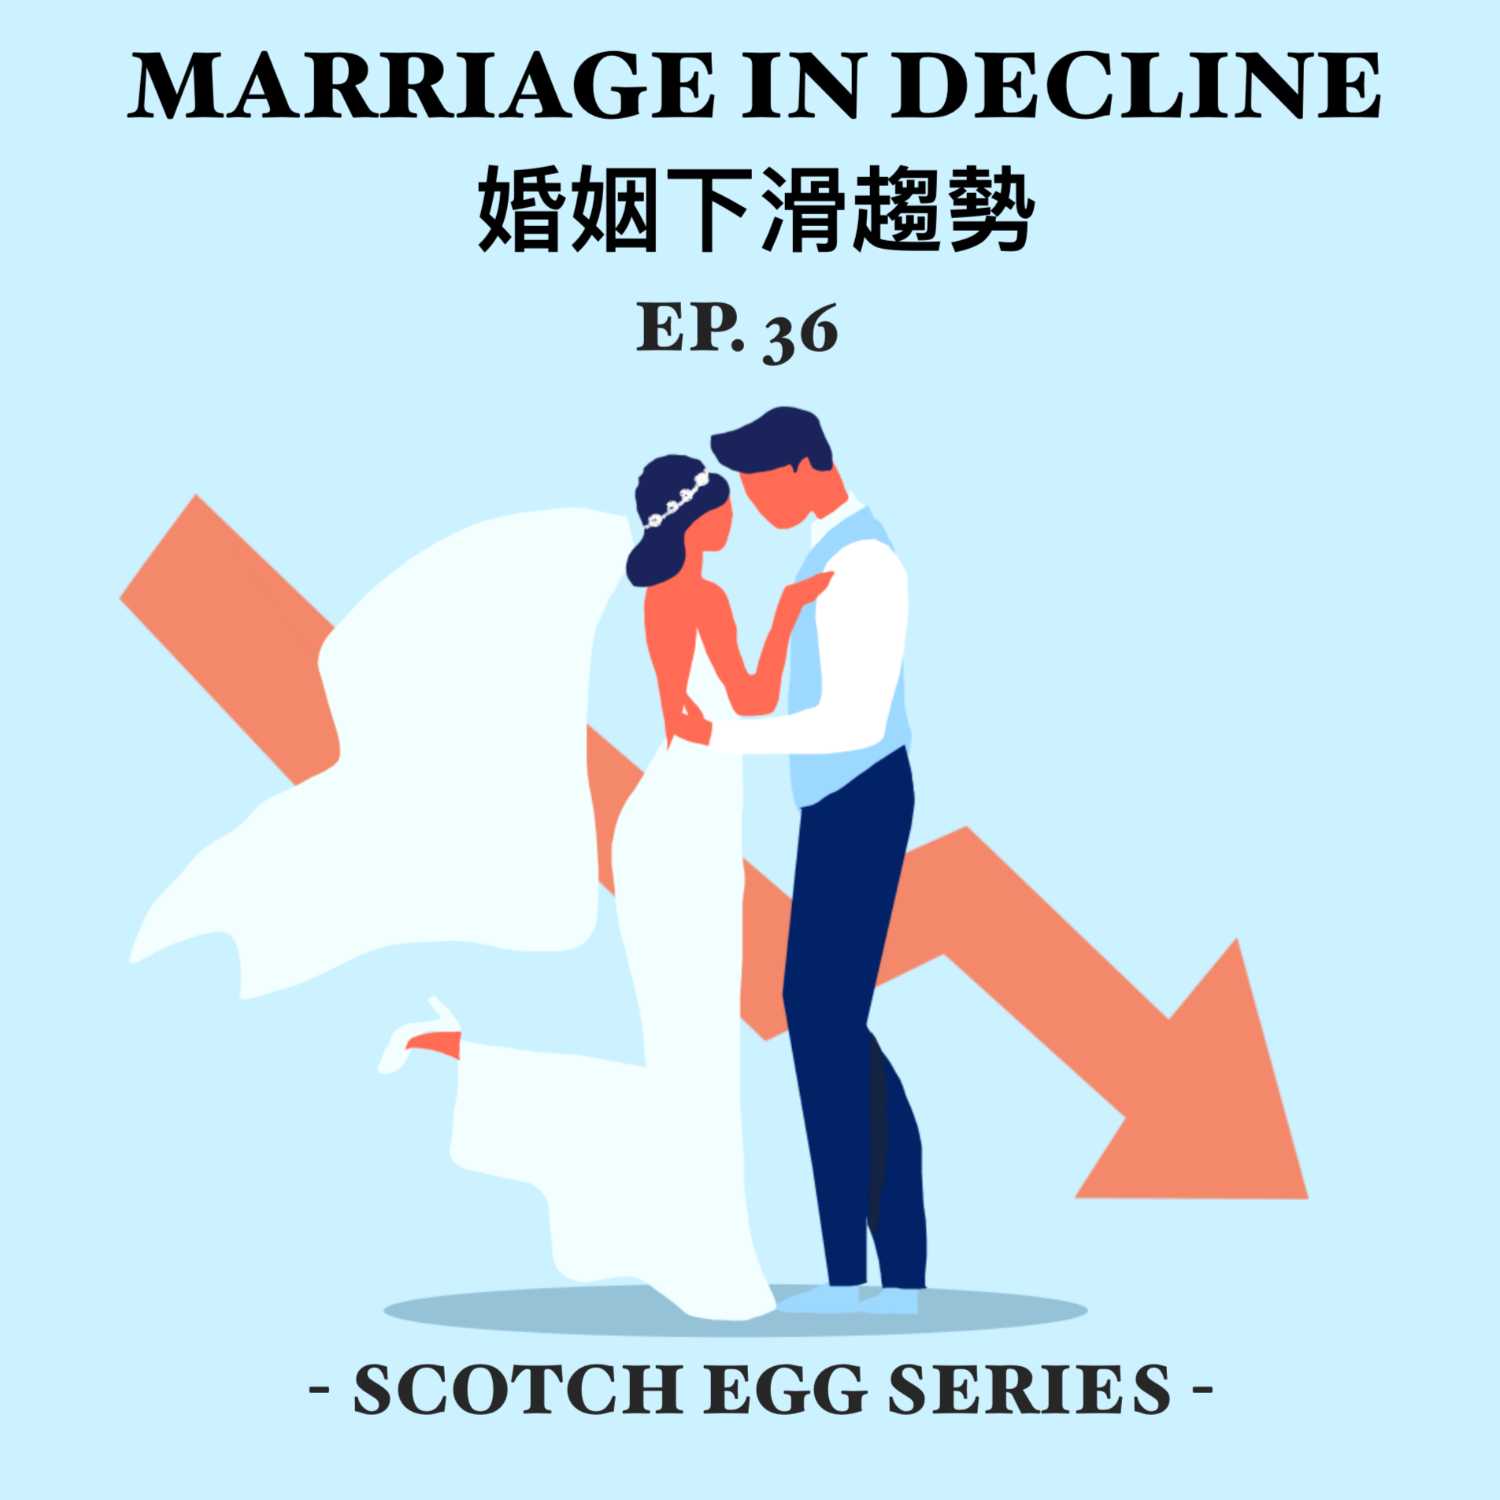 EP36 - Marriage in Decline 婚姻下滑趨勢 [EN]